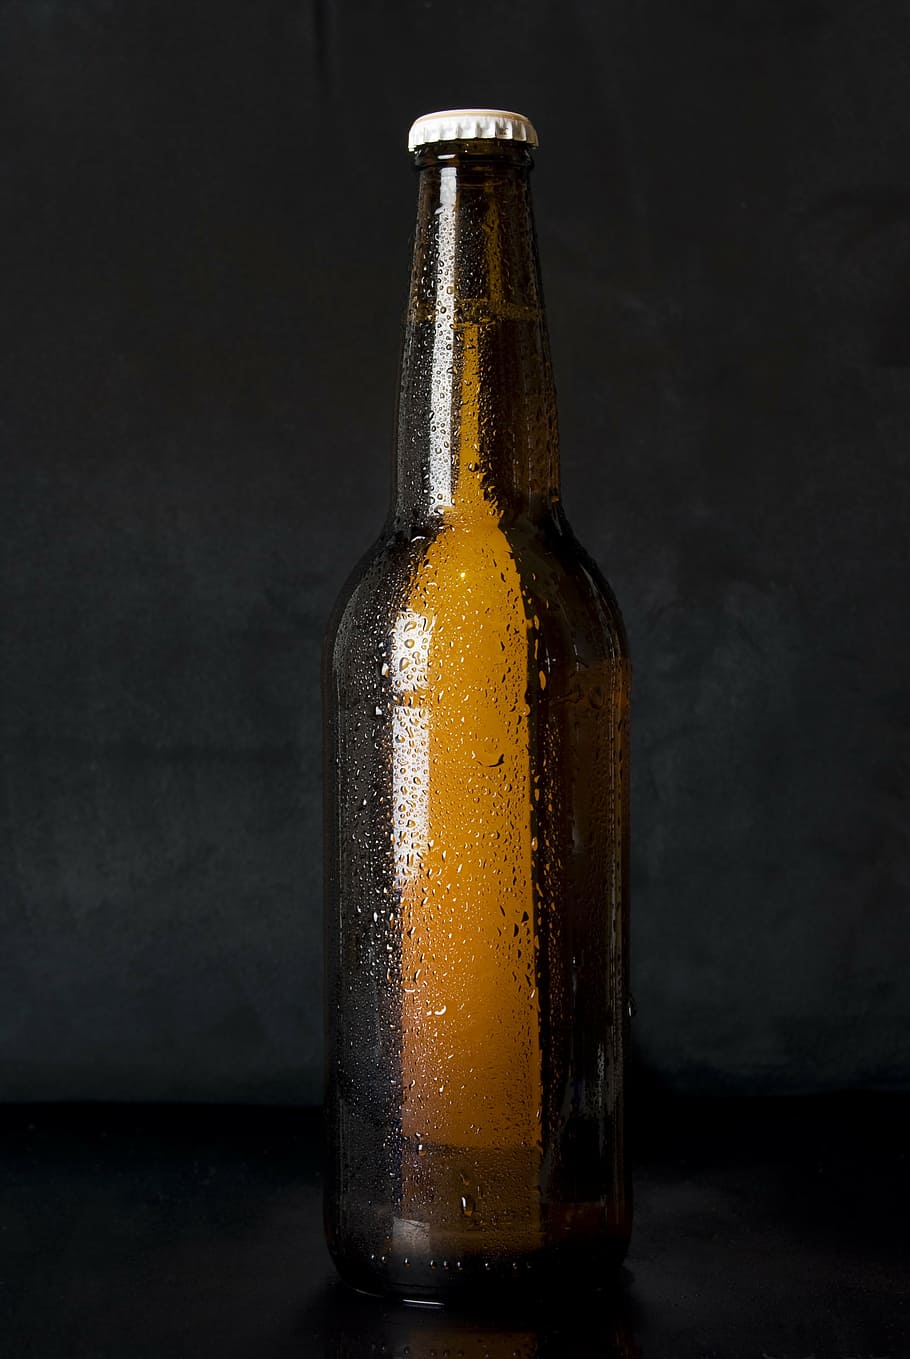 marrom, garrafa de vidro, topo, preto, superfície, vidro, garrafa, cerveja, álcool, fermentação